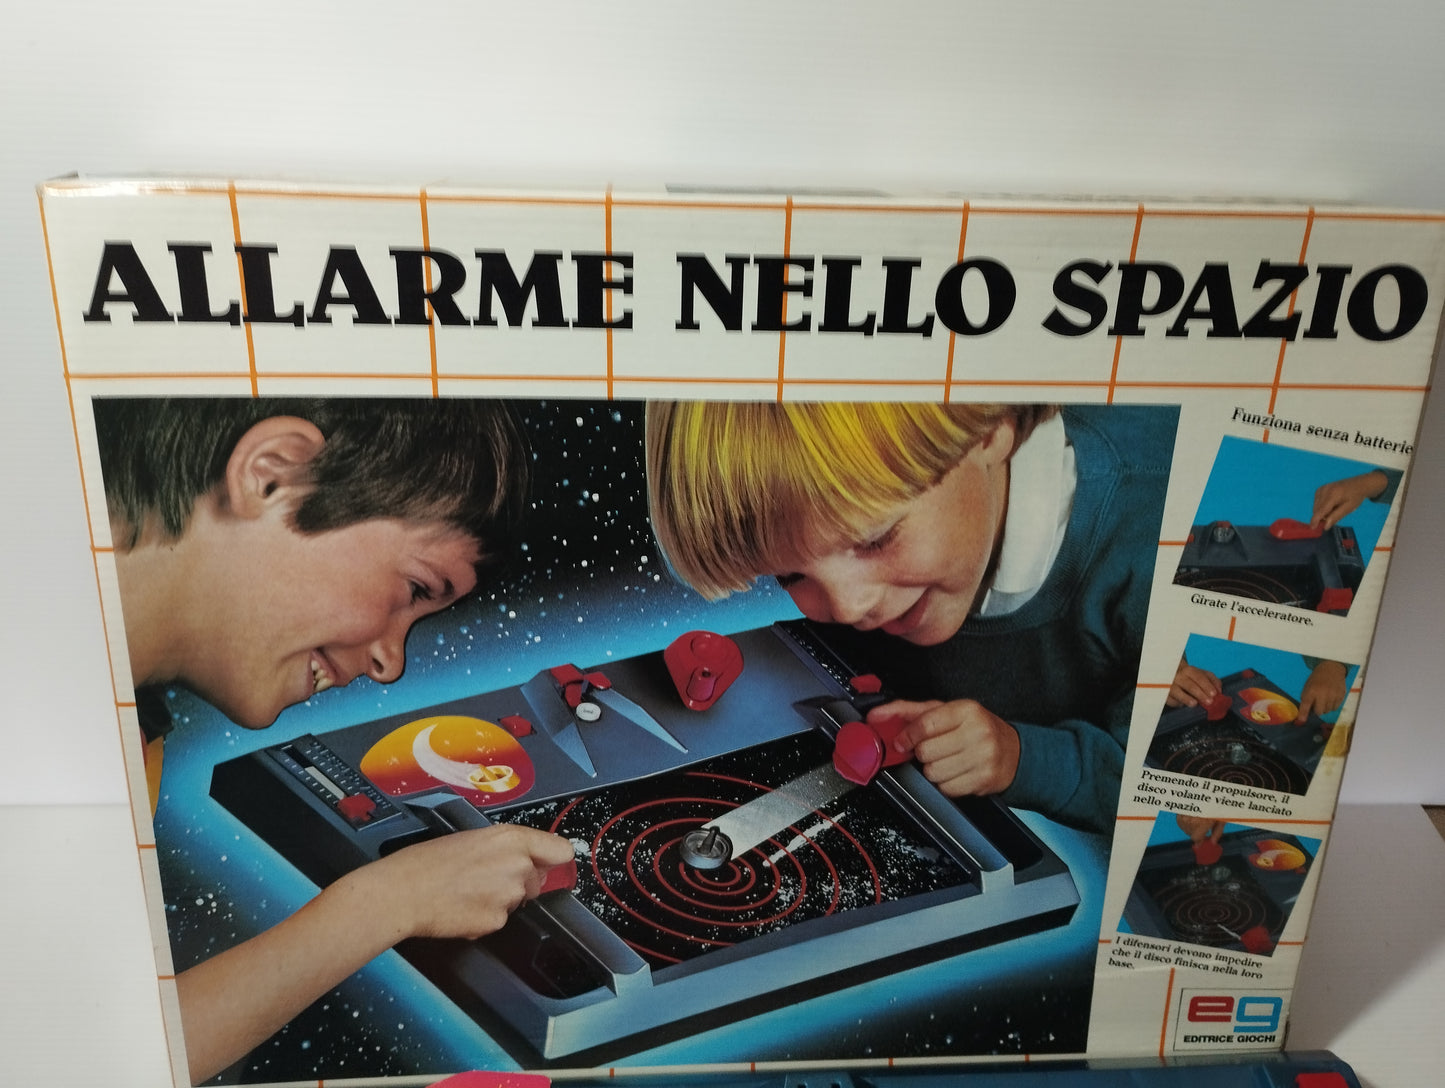 Gioco Allarme nello spazio della EG Editrice Giochi.
Originale anni 80.